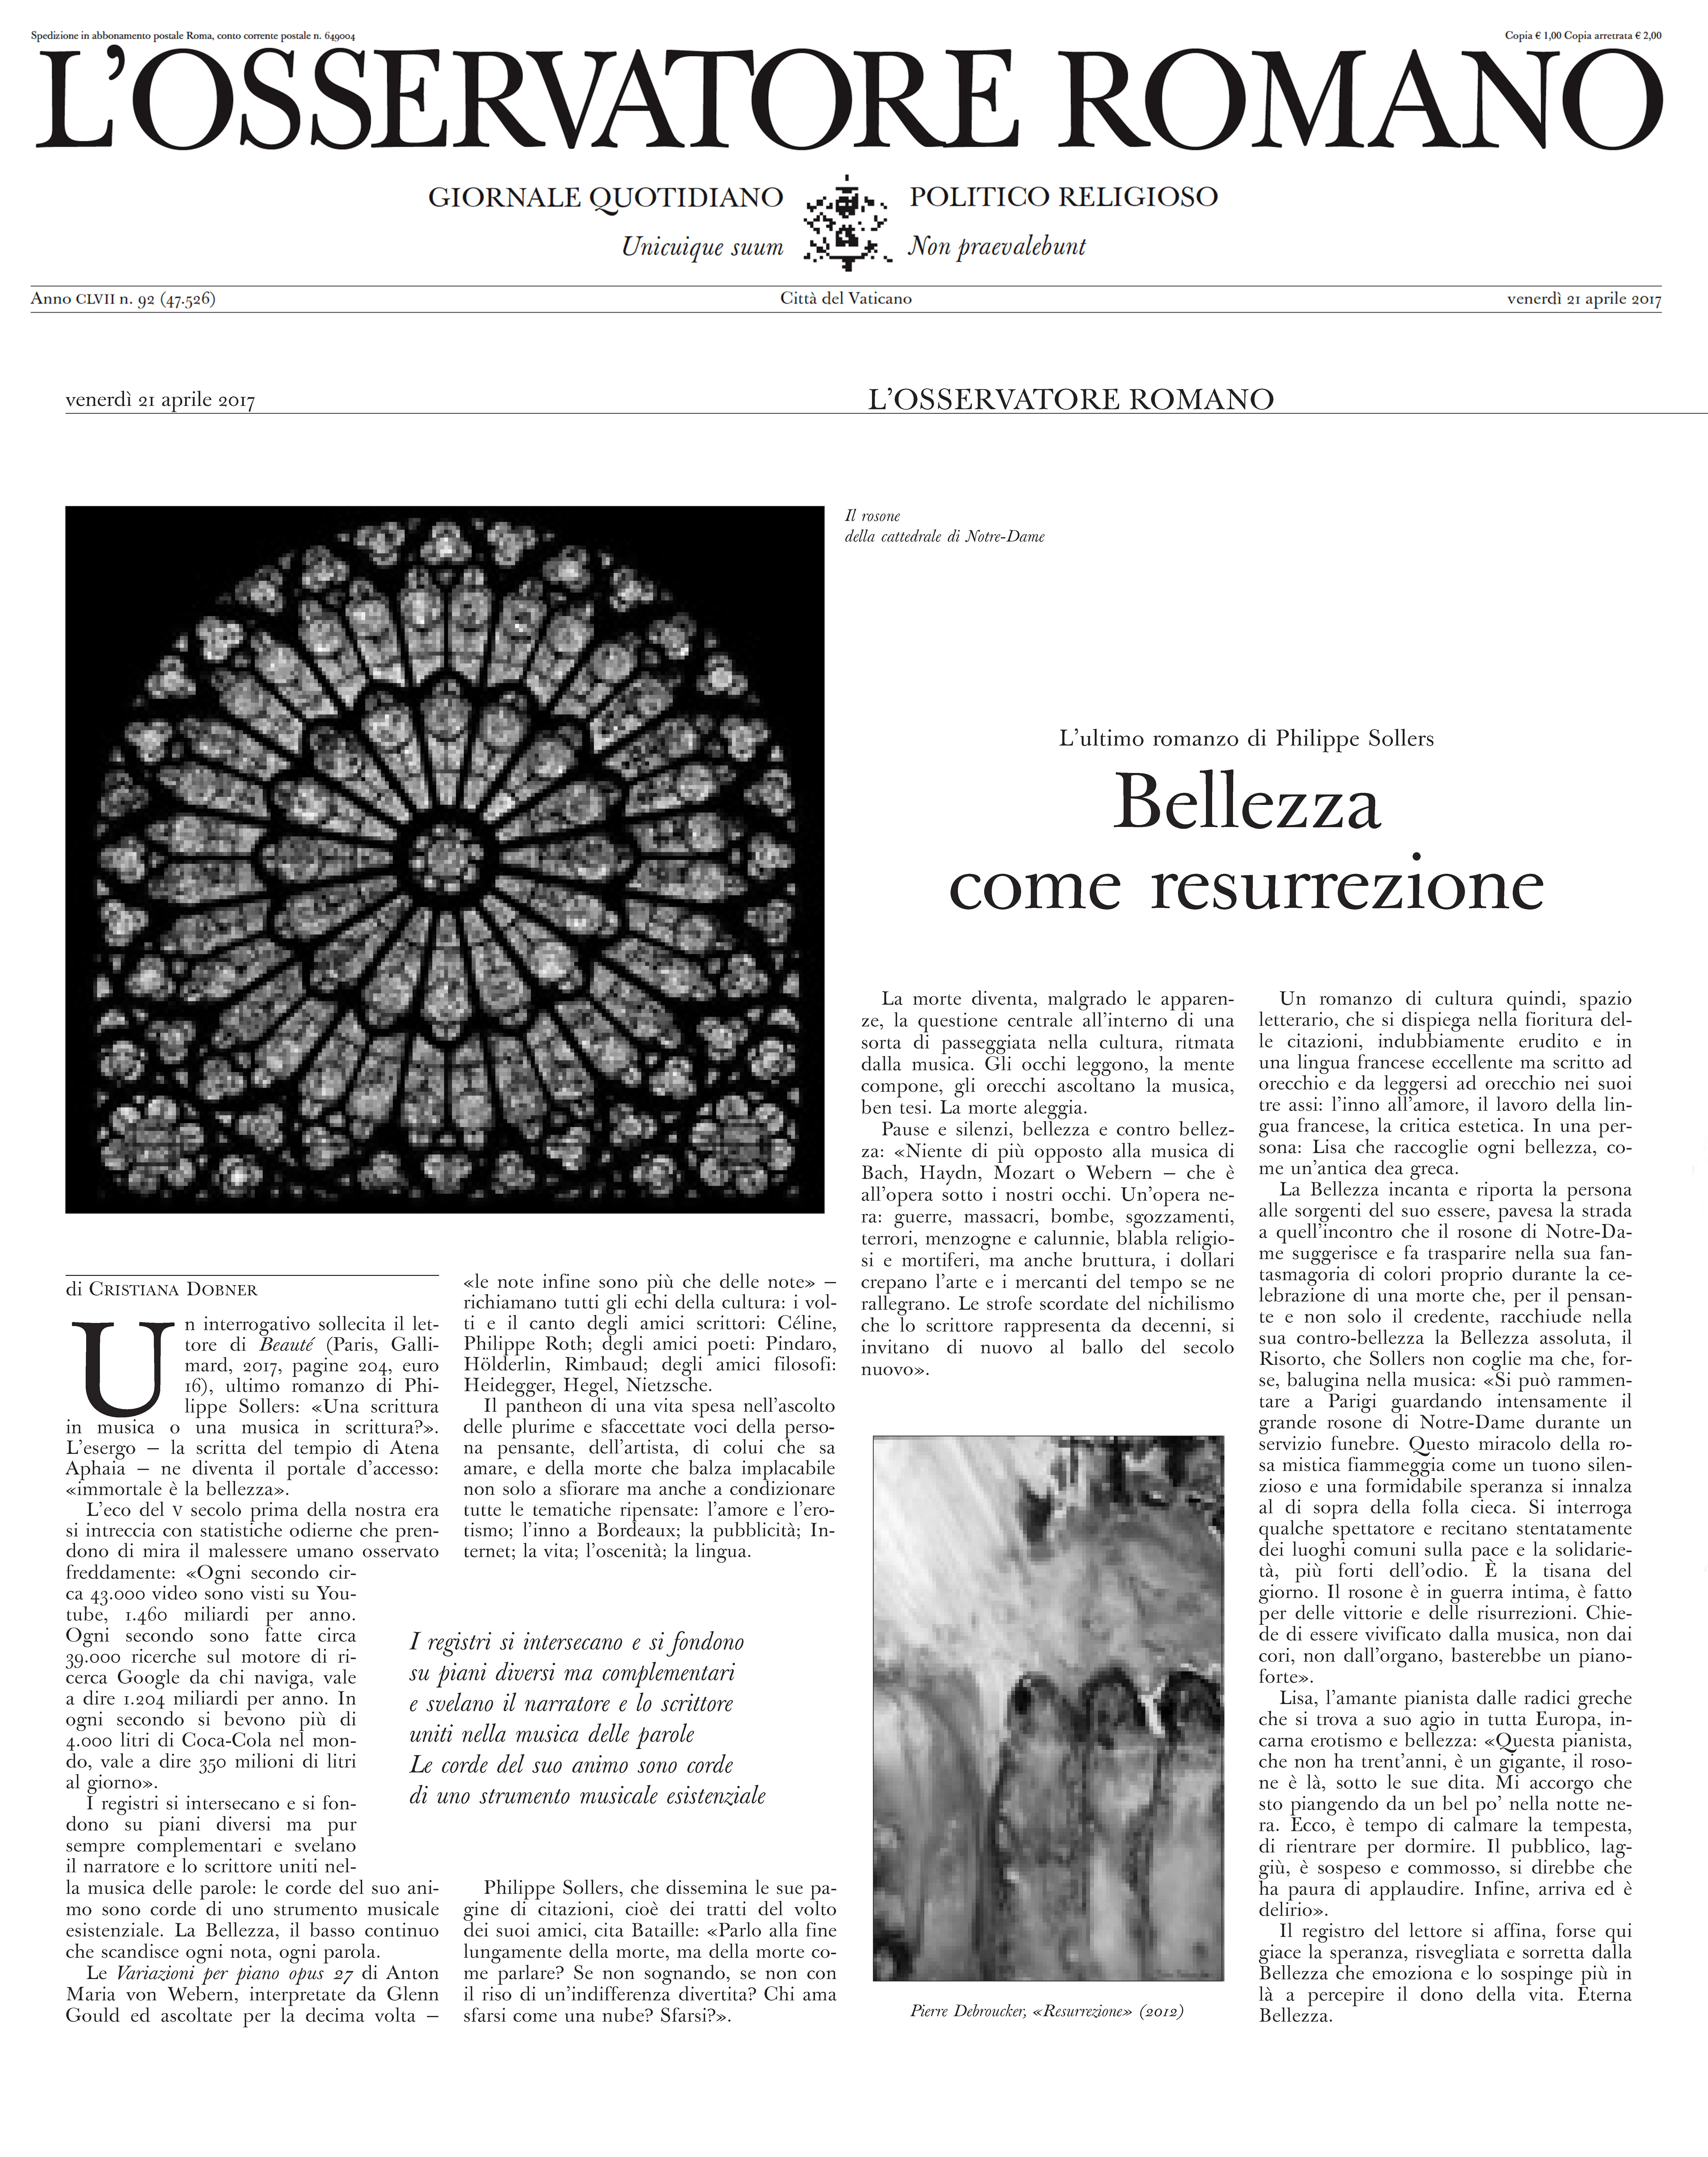 Philippe Sollers - Beauté - Bellezza come resurrezione - L’OSSERVATORE ROMANO, 21.05.2017